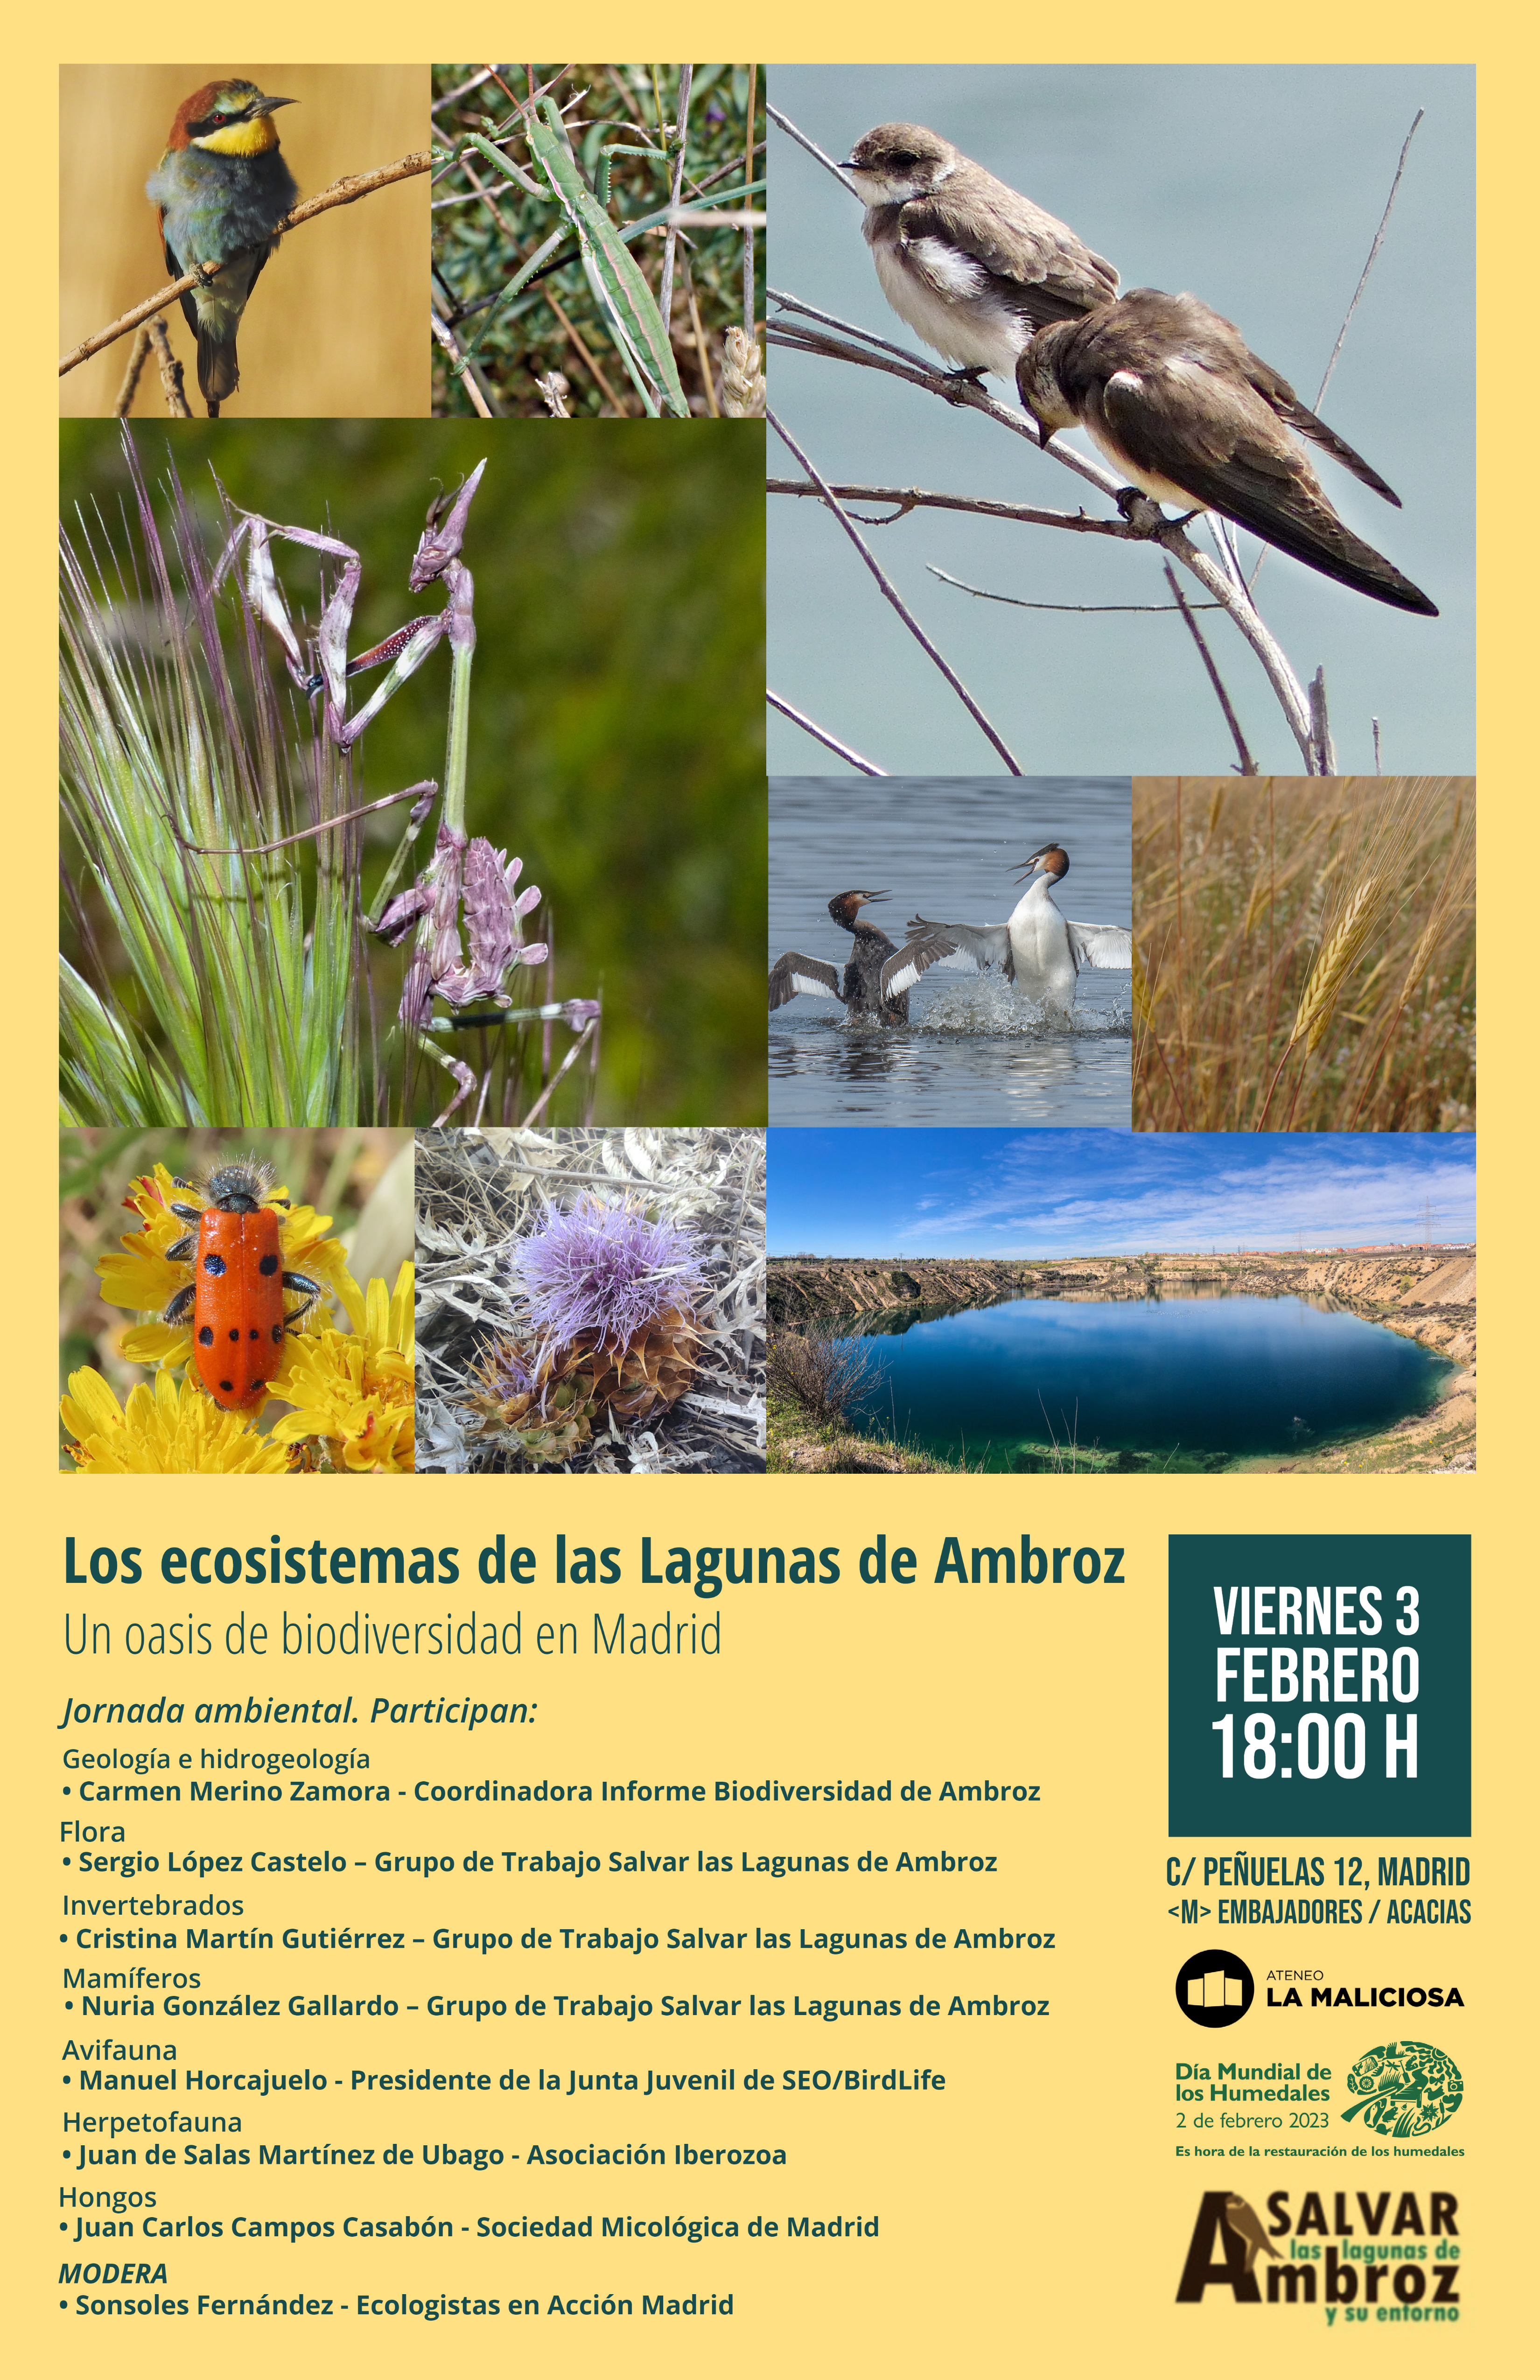 Los ecosistemas de las Lagunas de Ambroz. Un oasis de biodiversidad en Madrid